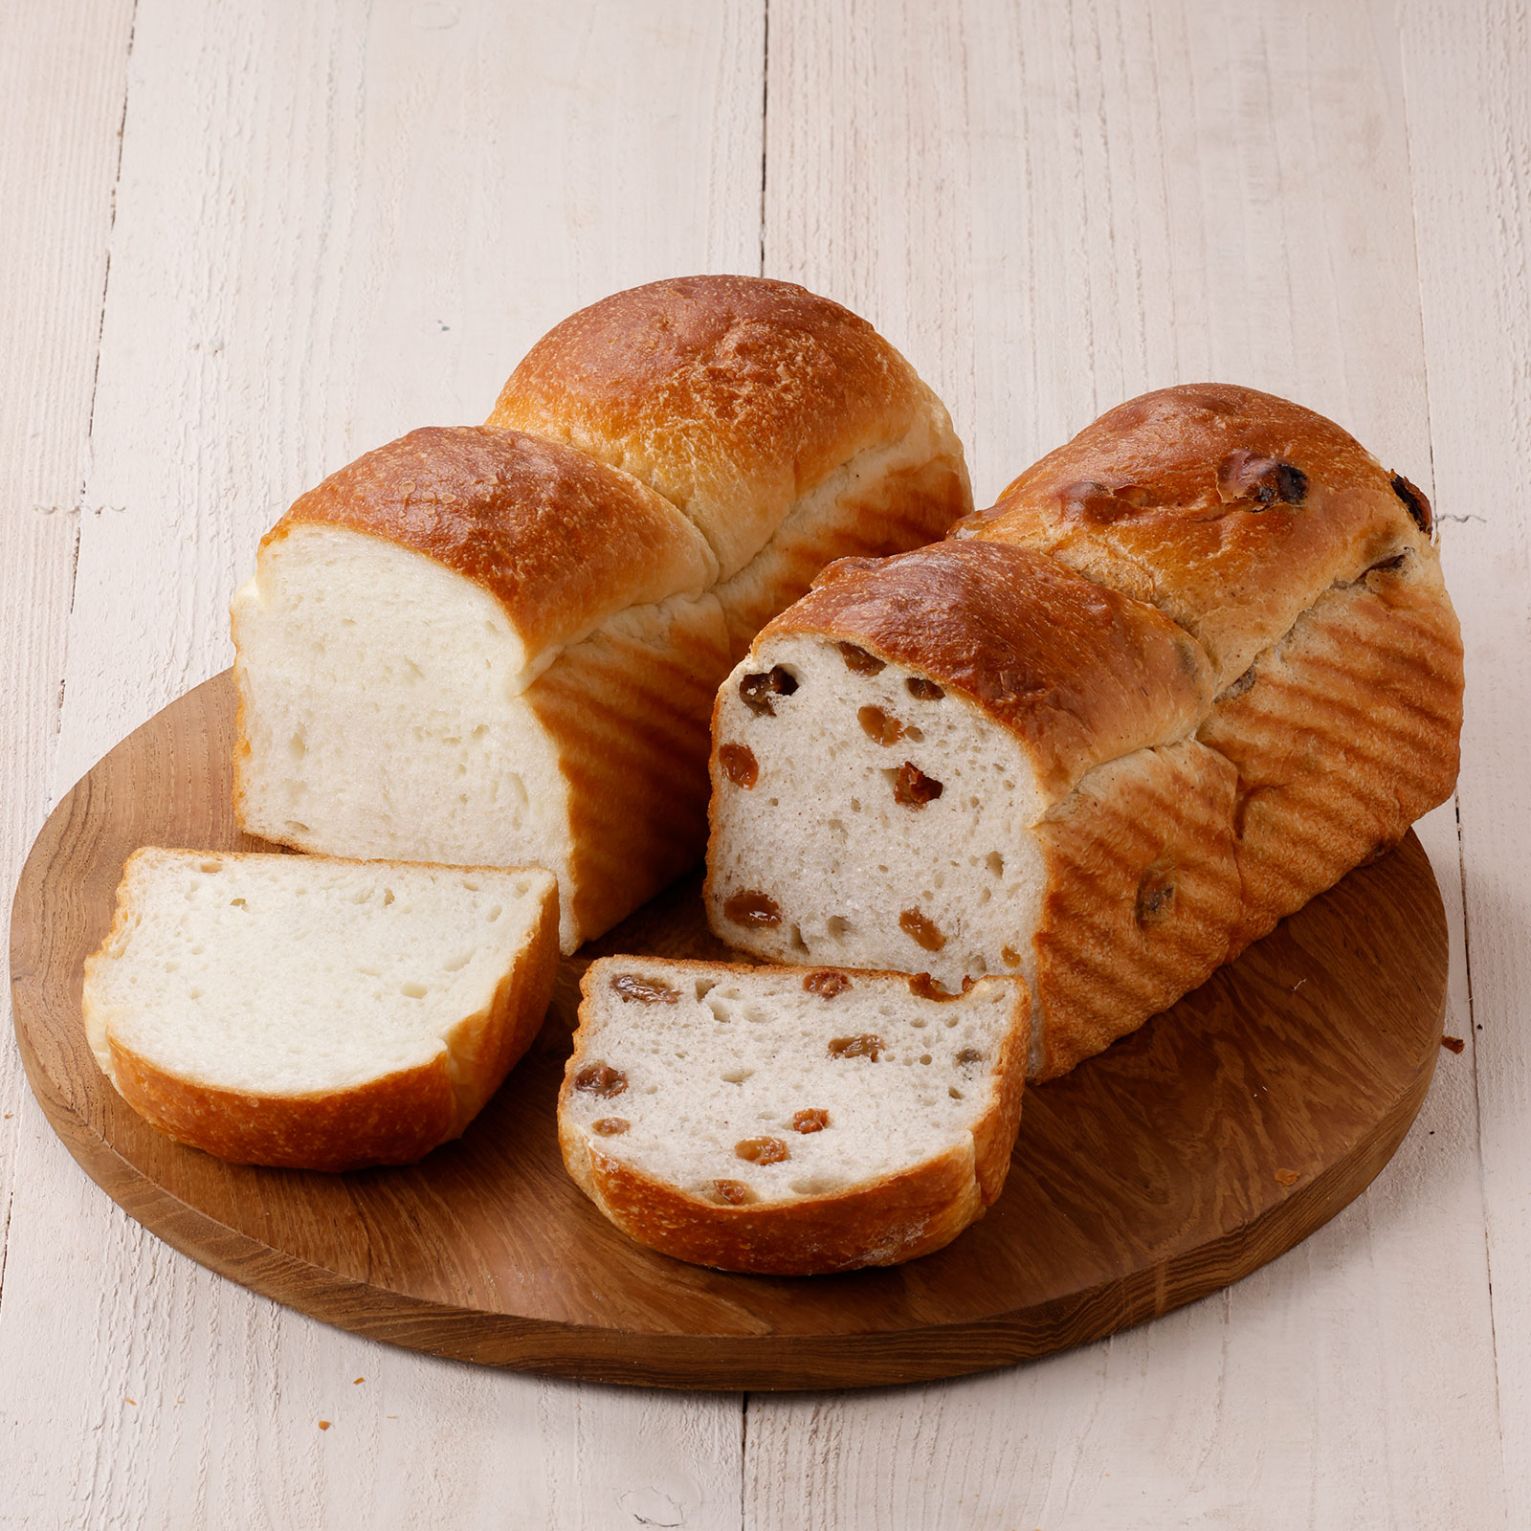 ほんのり甘さ感じるプレーン食パンと有機シナモンが香るぶどう食パン